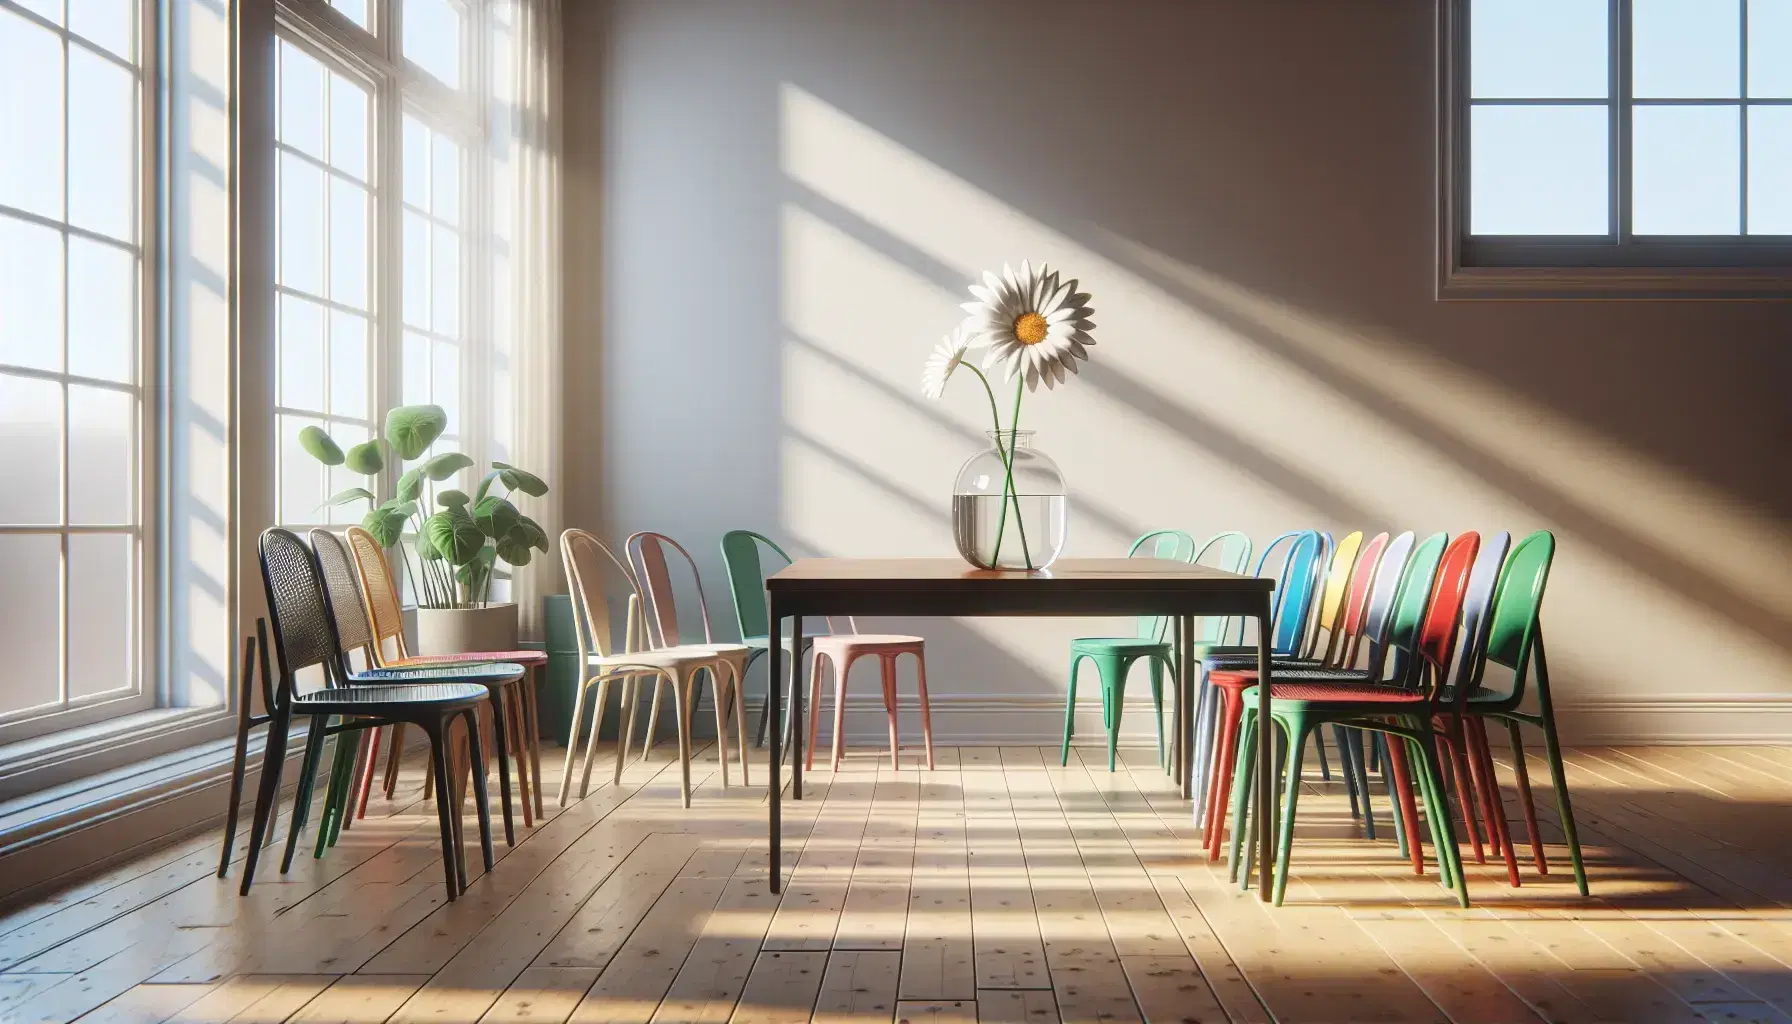 Interno luminoso con tavolo in legno e vaso di vetro contenente margherita, sedie impilabili colorate e pianta verde vicino alla finestra.